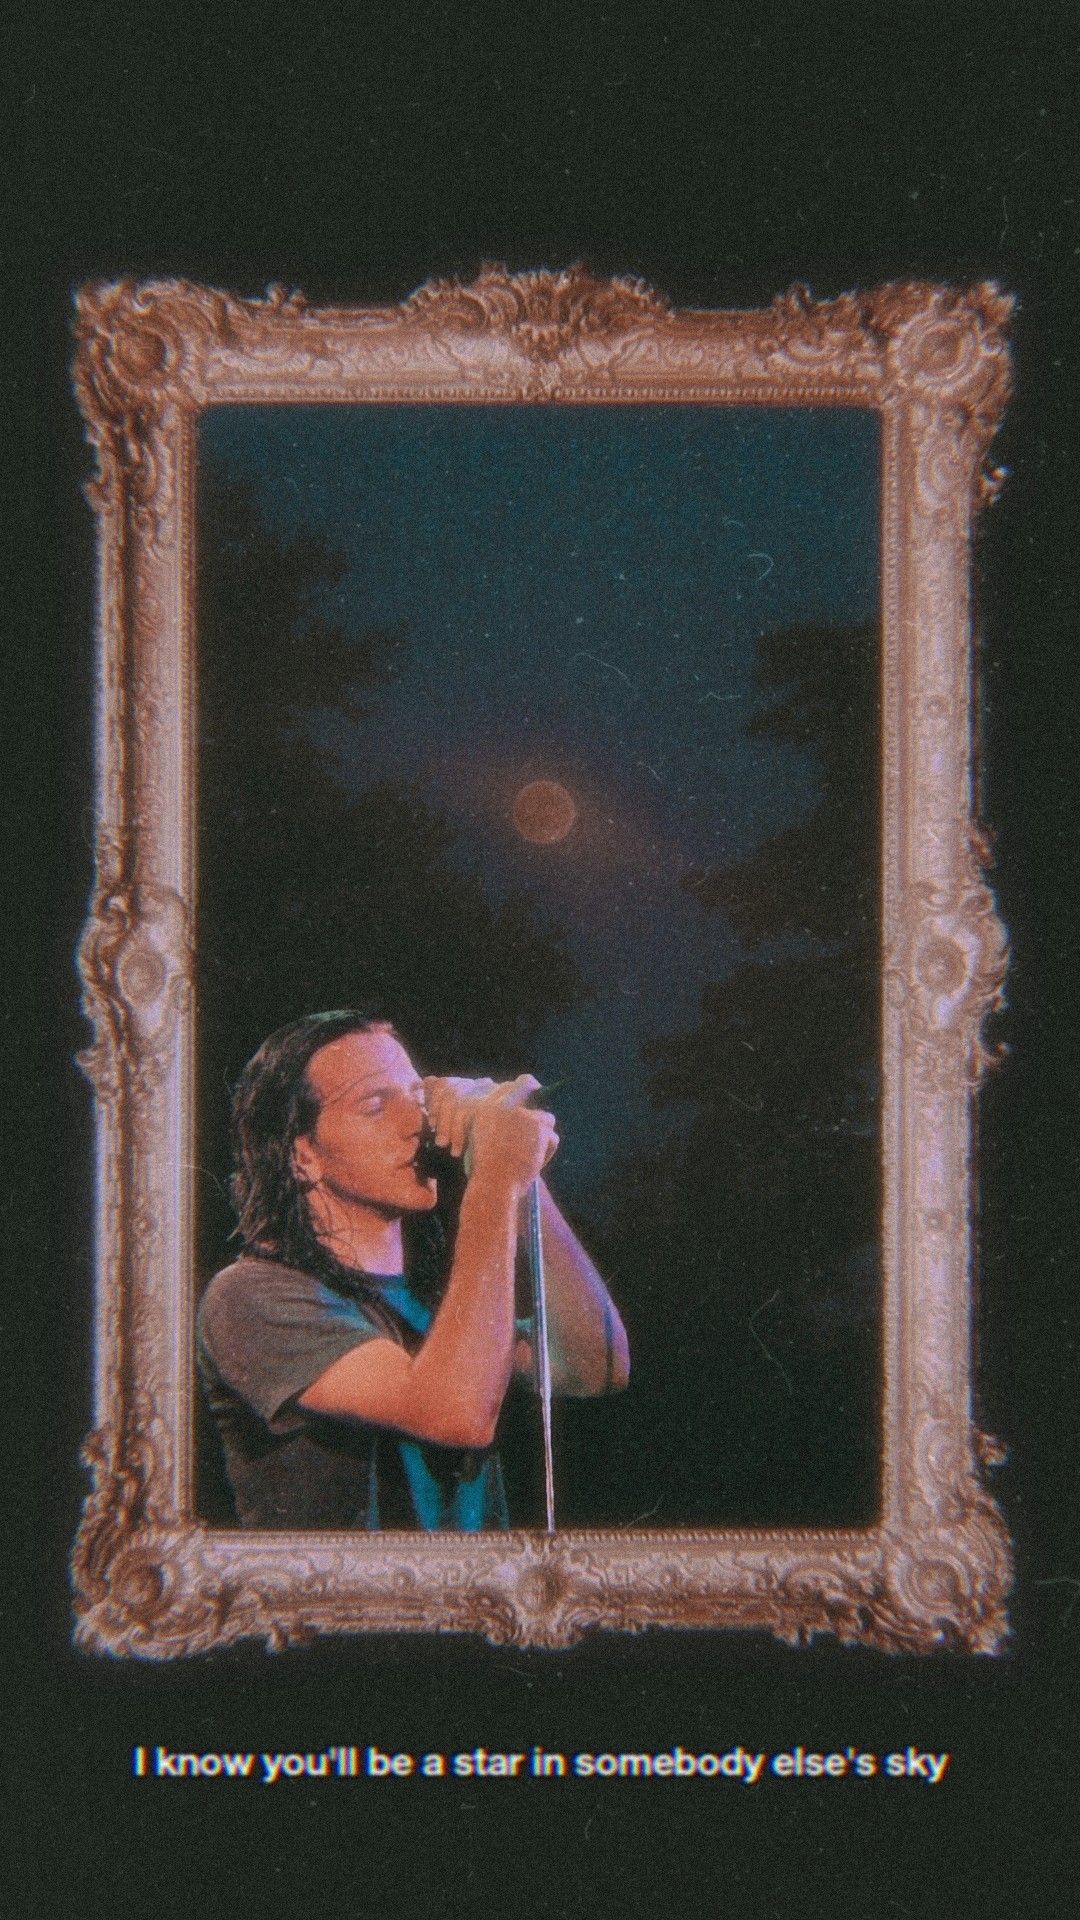 Pearl Jam Wallpapers